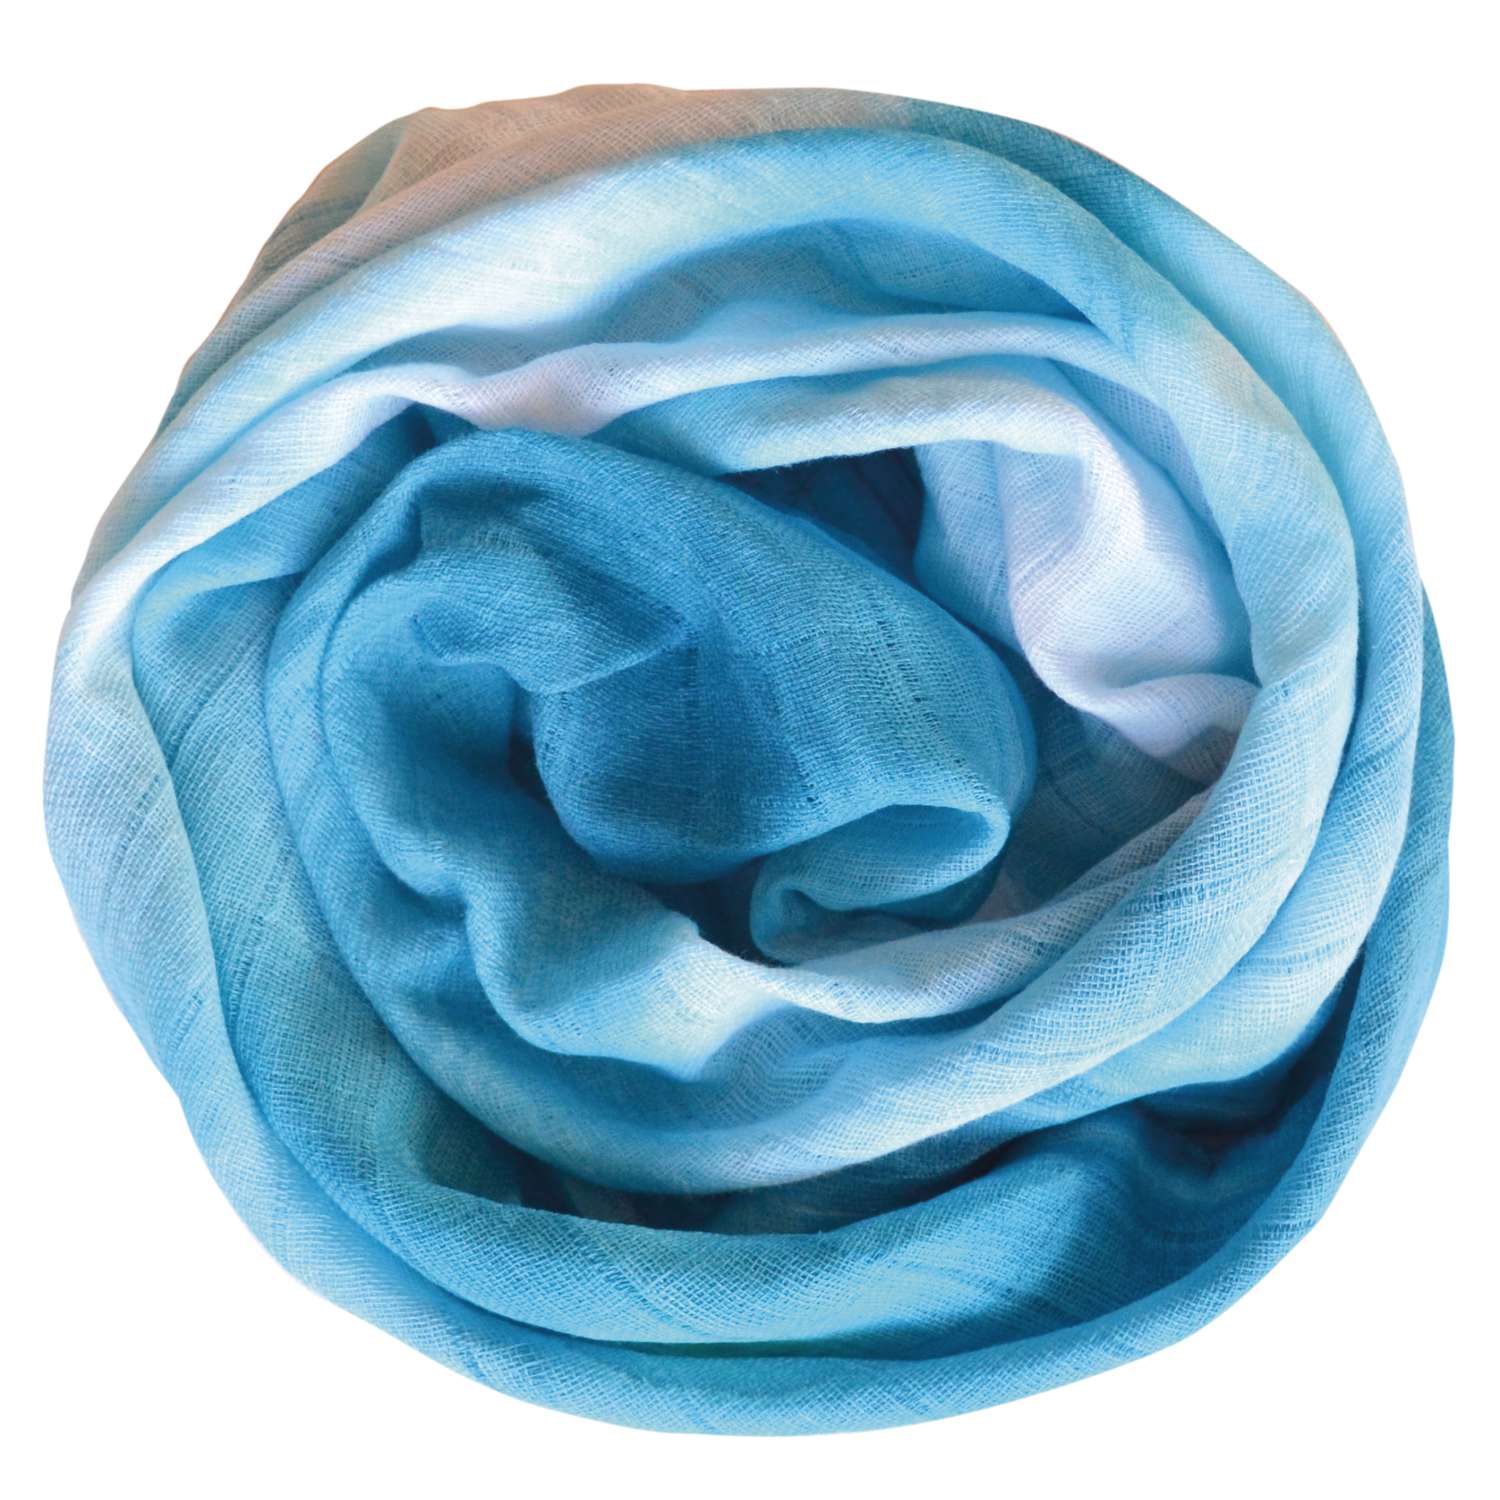 Textil Kleber (Colle tissu) - ViVa Decor 112105001